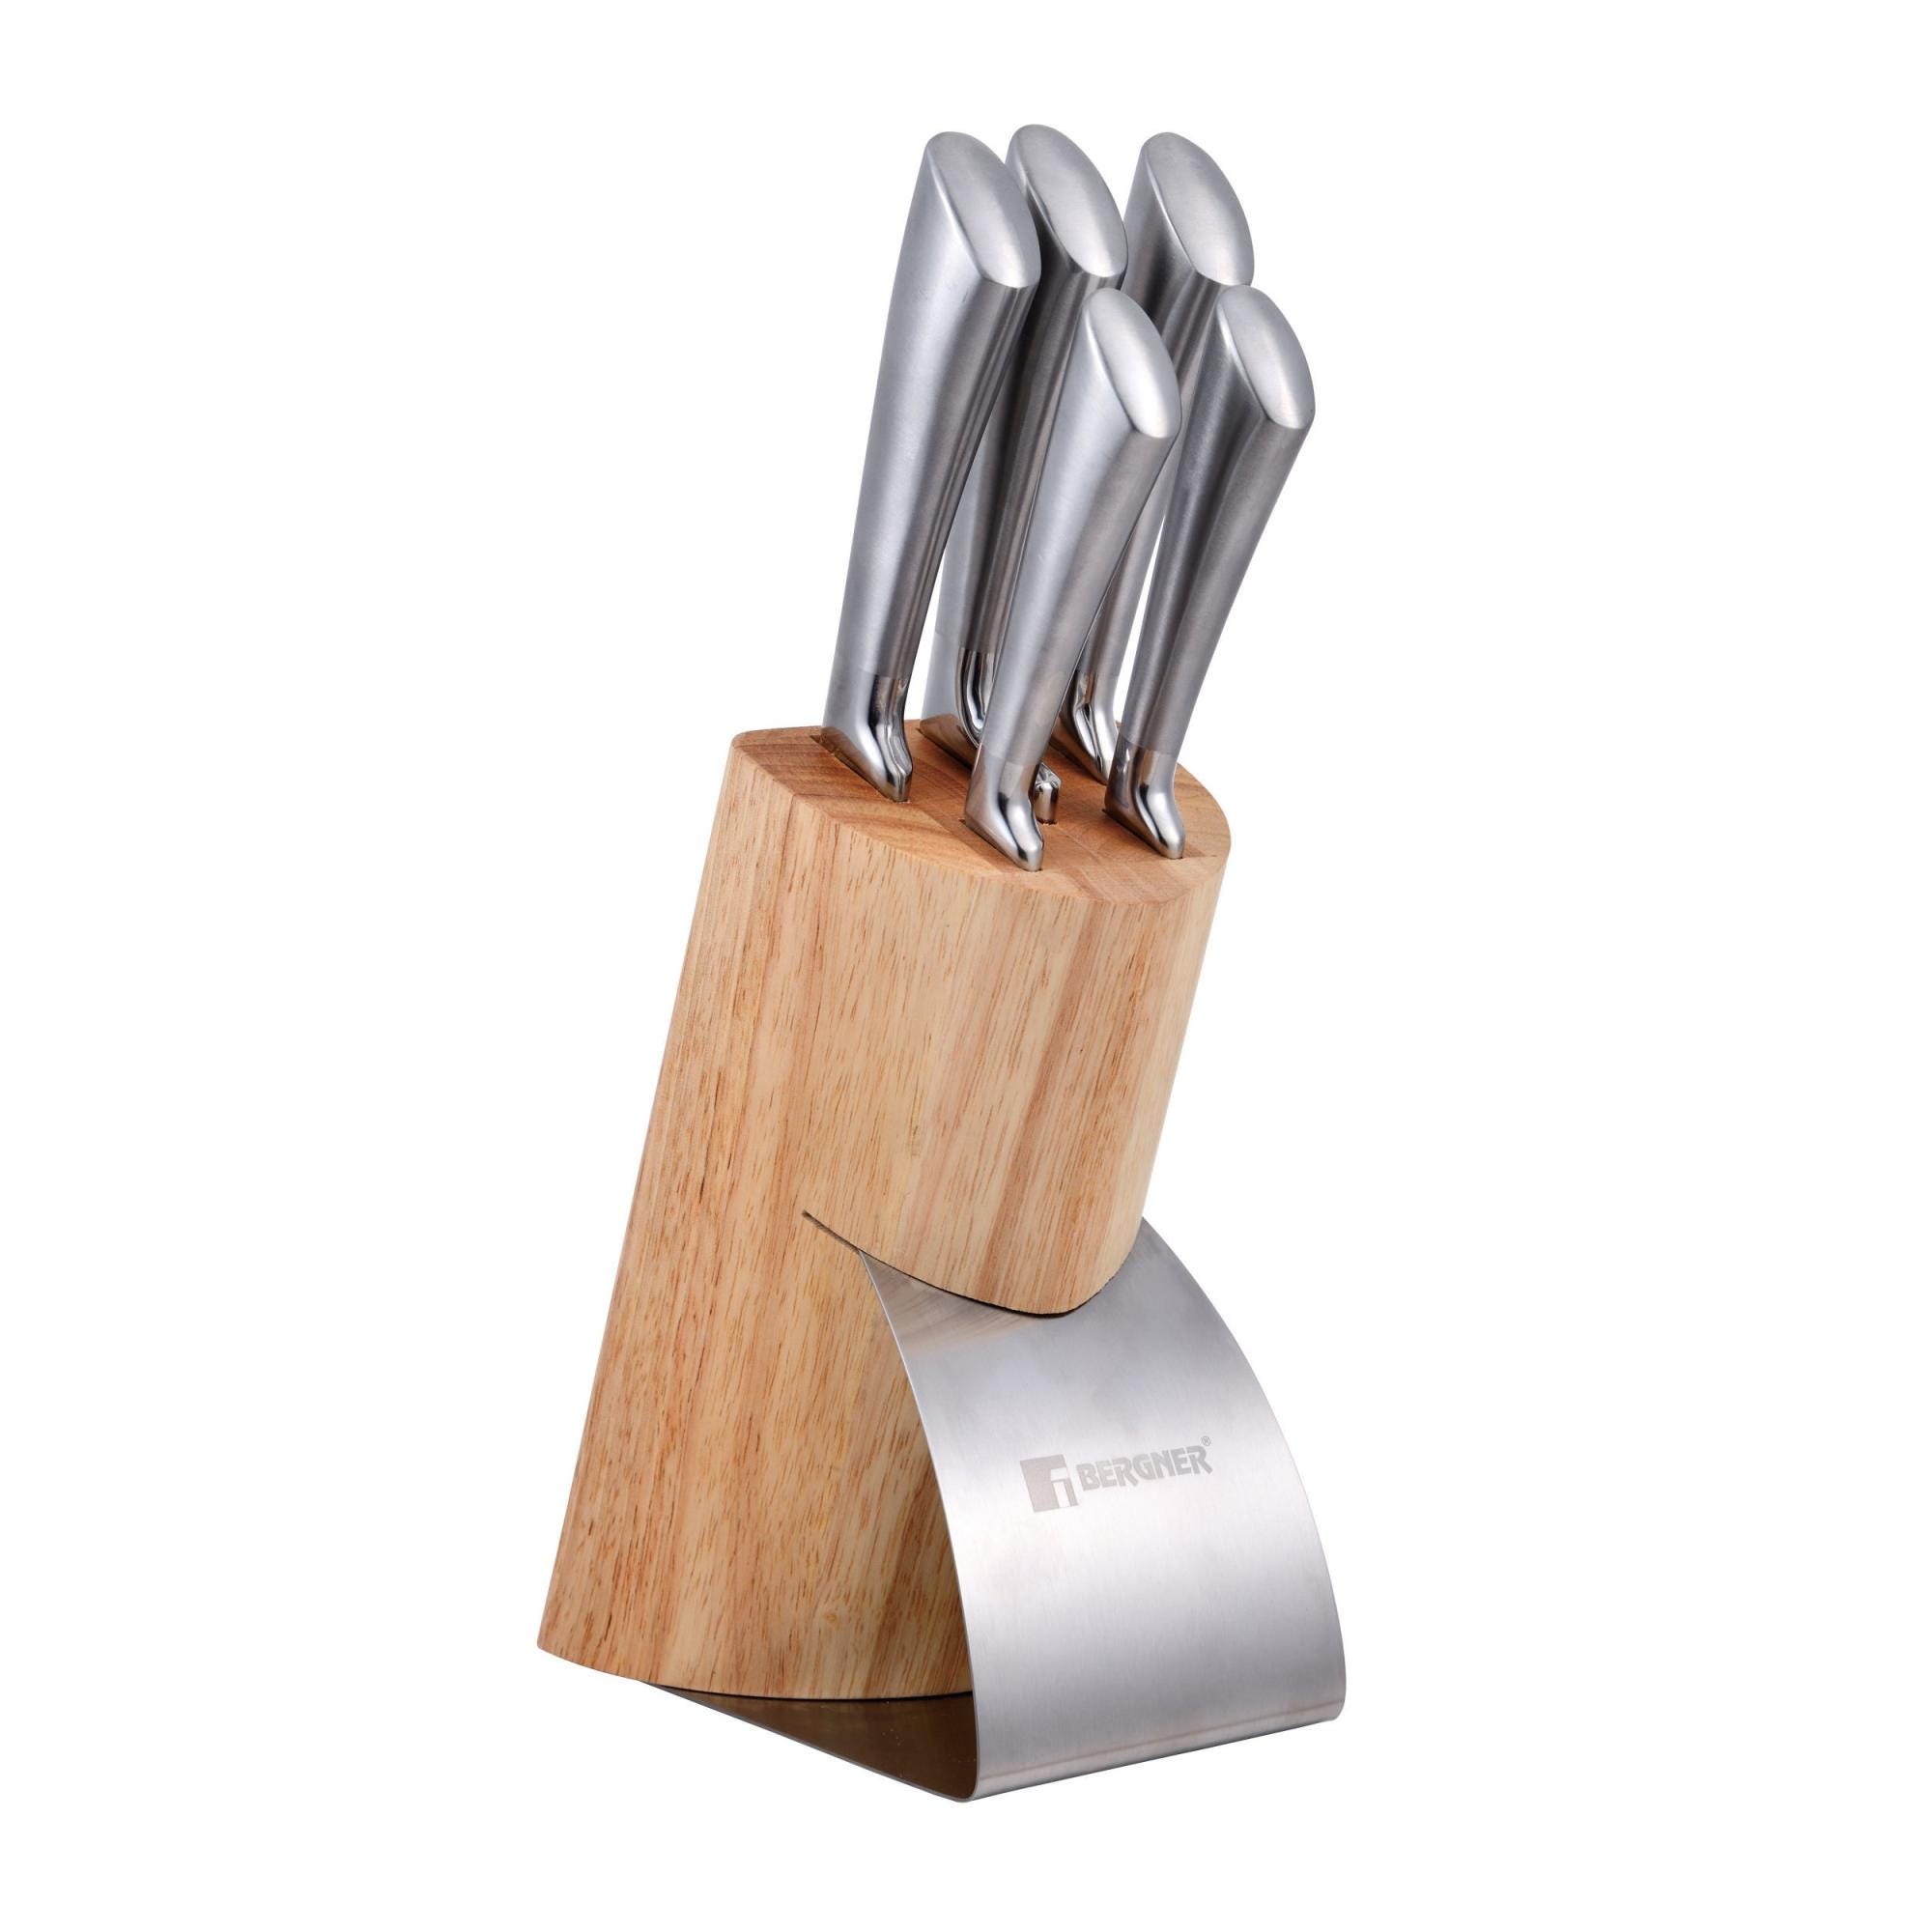 Set de 7 piezas con 5 cuchillos + tacoma madera y acero